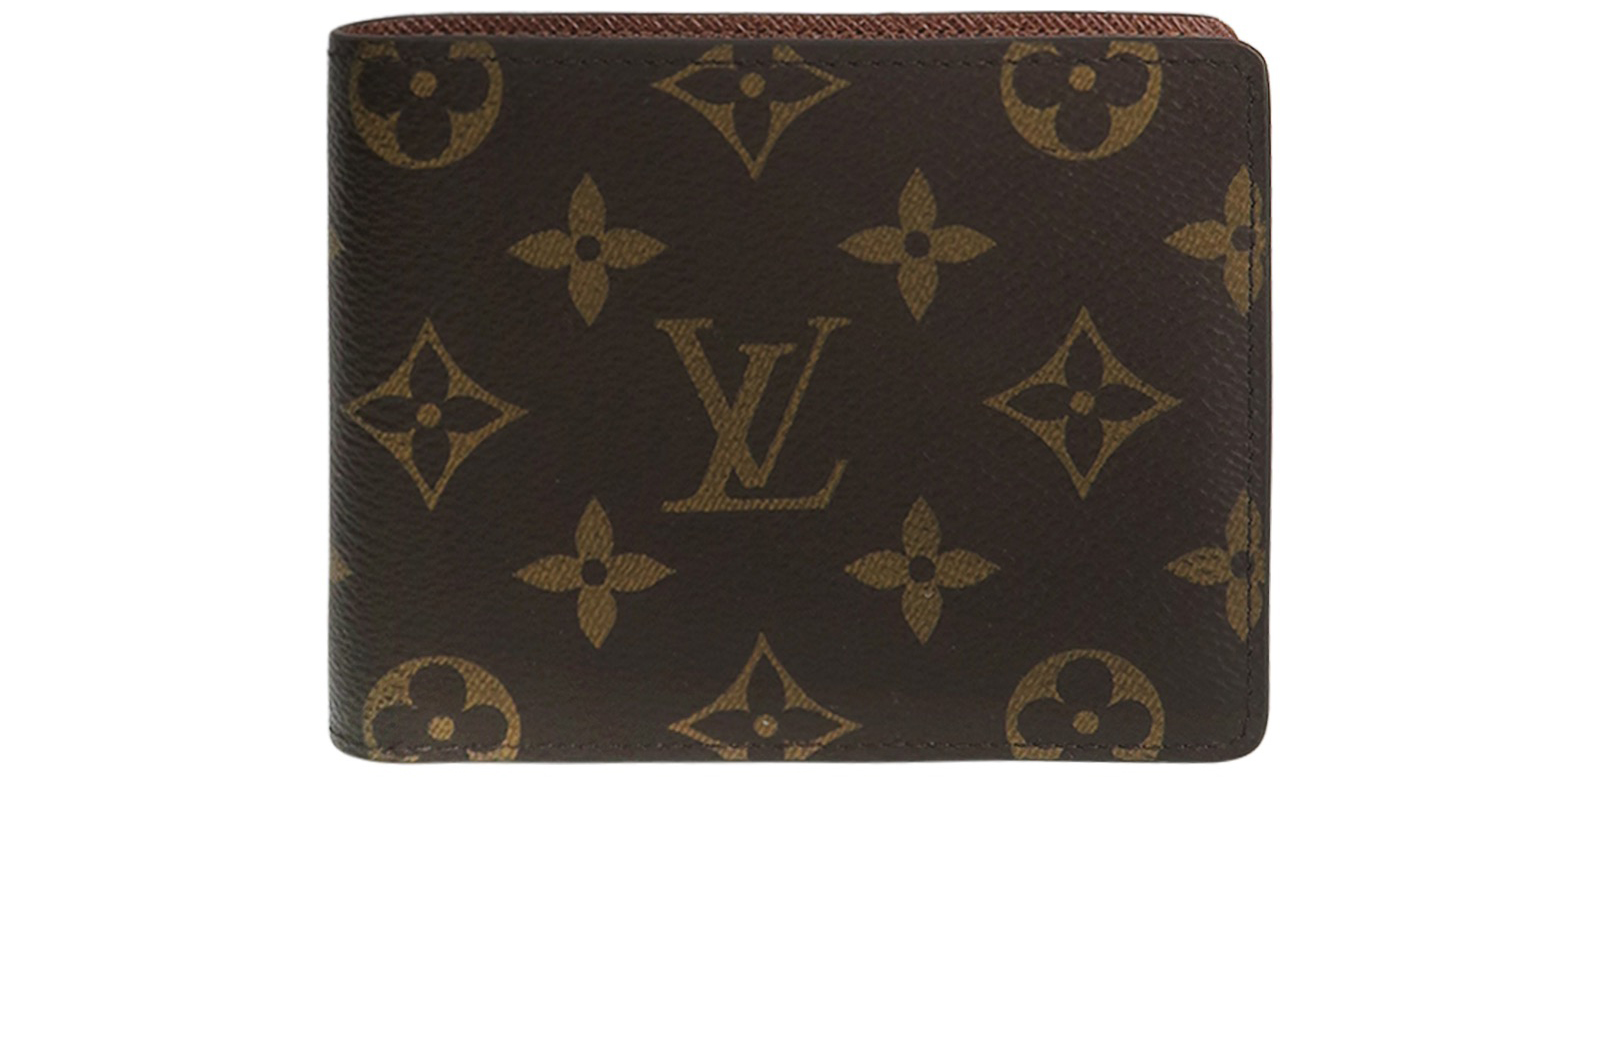 Louis Vuitton Slender Wallet FOR SALE! - PicClick UK